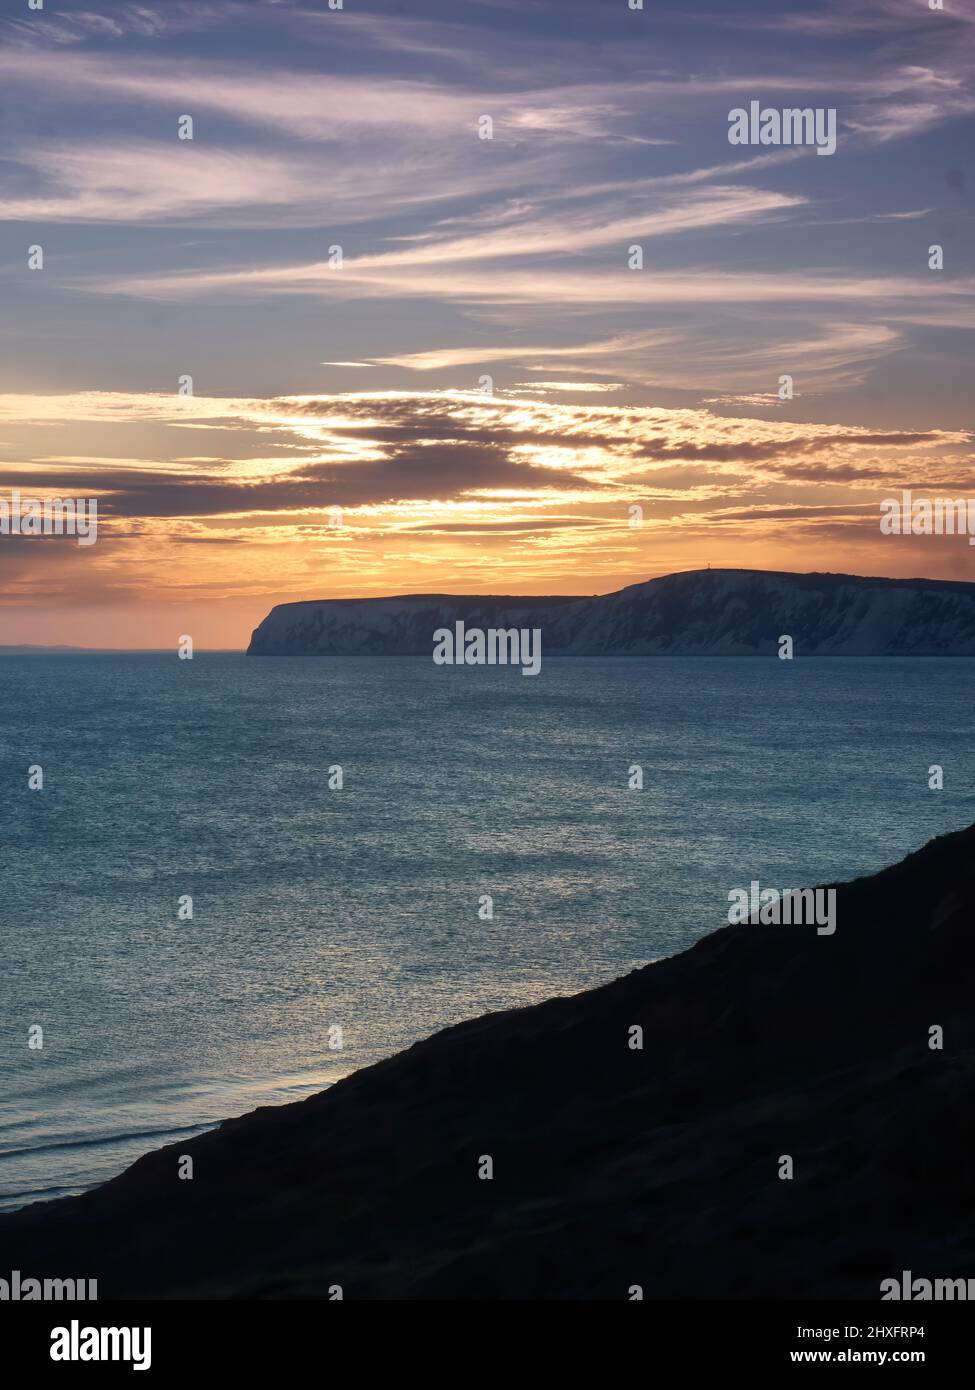 Un radioso e glorioso tramonto sul mare e sulle promontori di una scogliera di gesso dell'Isola di Wight, con i ricchi raggi dorati riflessi nelle acque testurizzate. Foto Stock